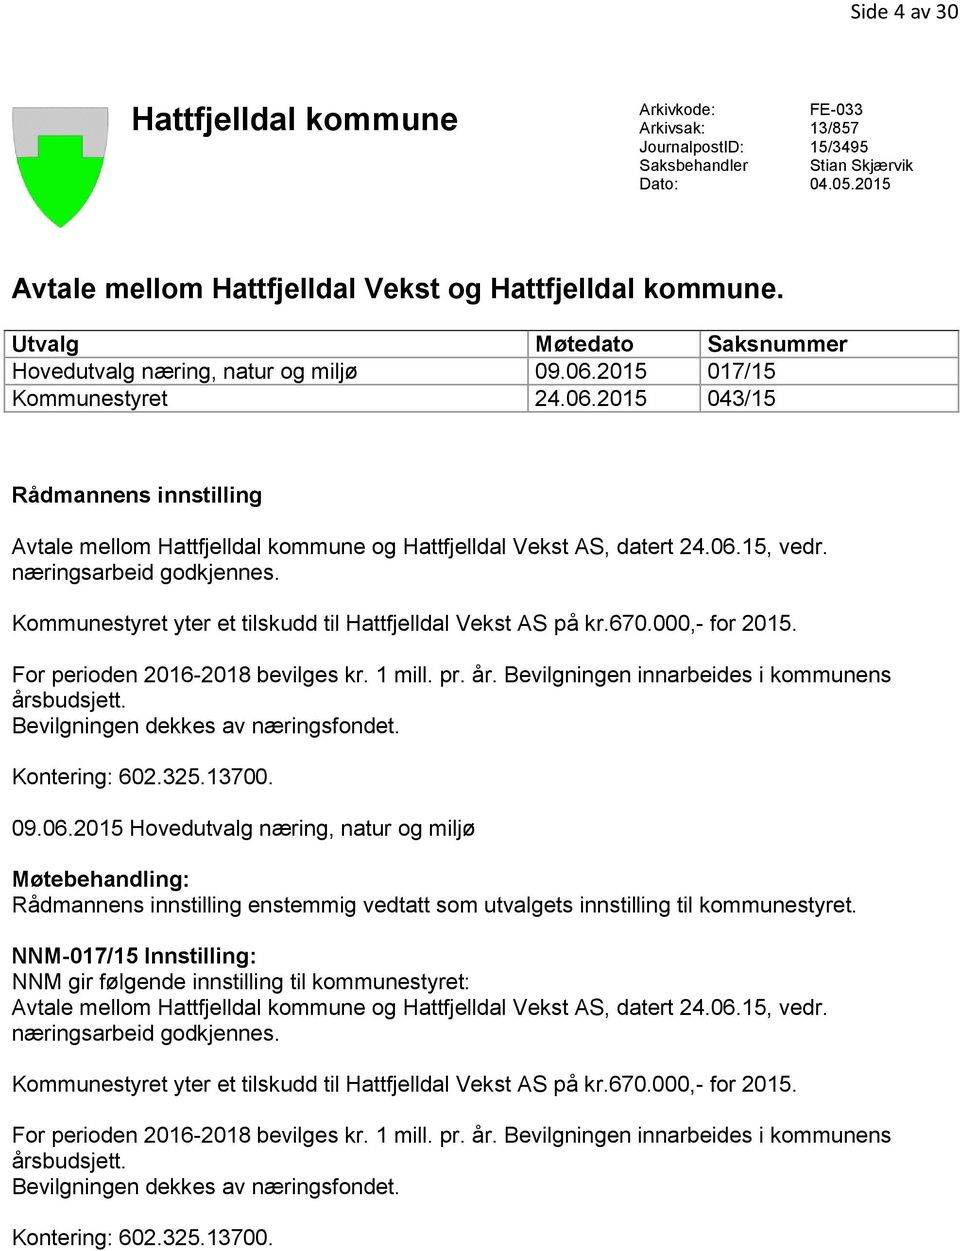 06.15, vedr. næringsarbeid godkjennes. Kommunestyret yter et tilskudd til Hattfjelldal Vekst AS på kr.670.000,- for 2015. For perioden 2016-2018 bevilges kr. 1 mill. pr. år.